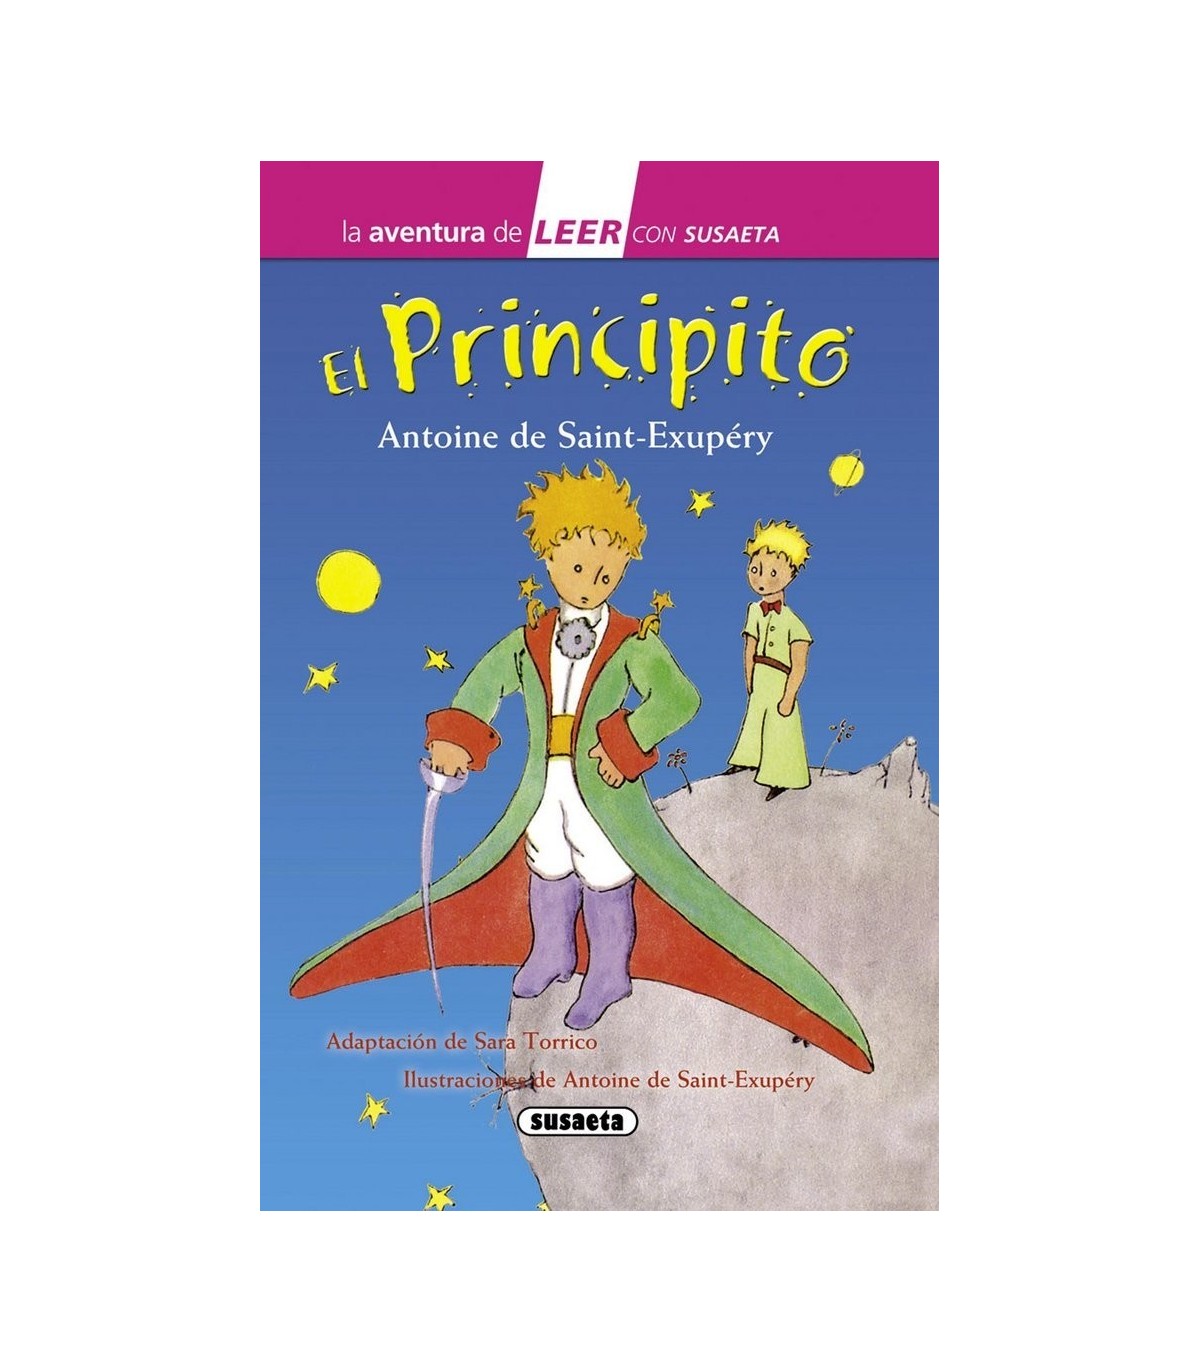 El Principito. Un libro interactivo para los más pequeños